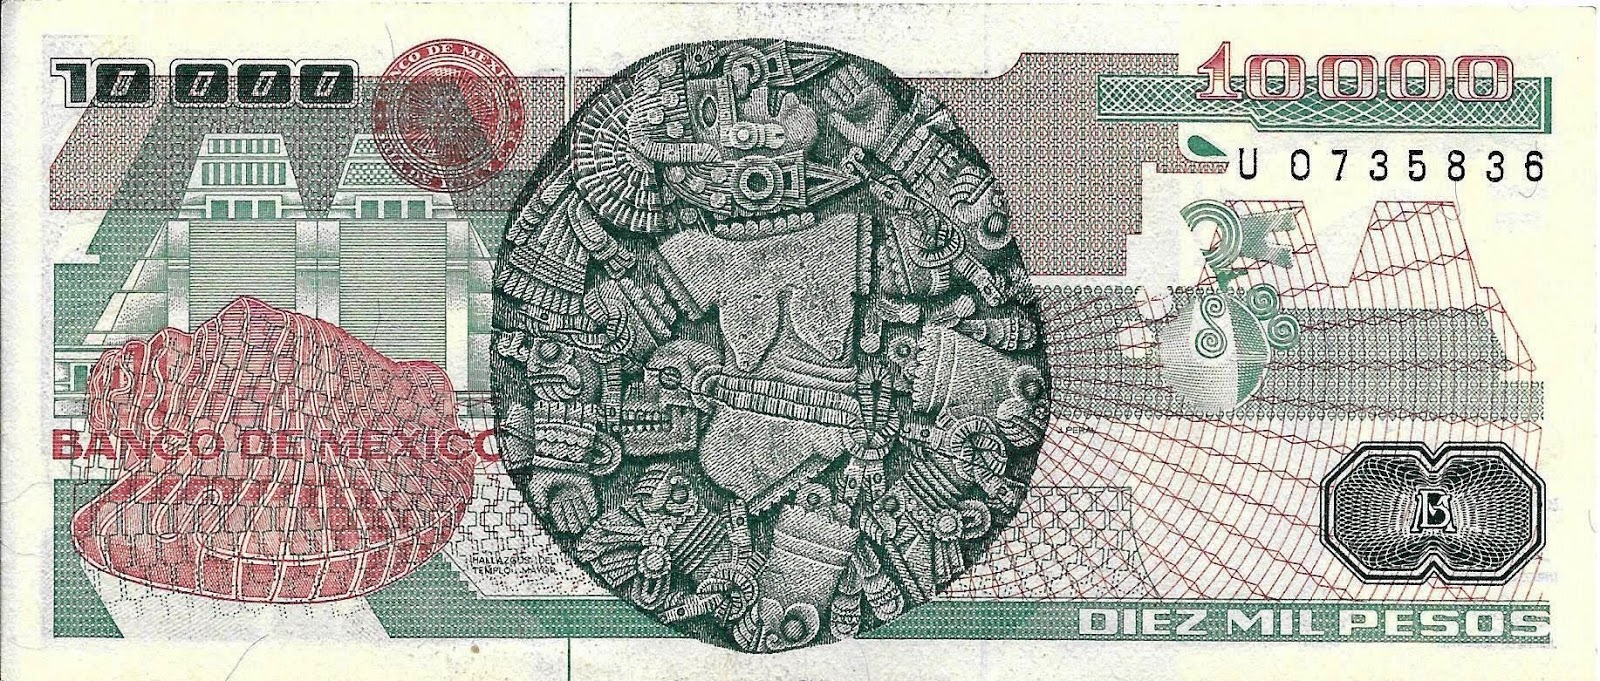 Mi Colección de Monedas y Billetes Billete de 10,000